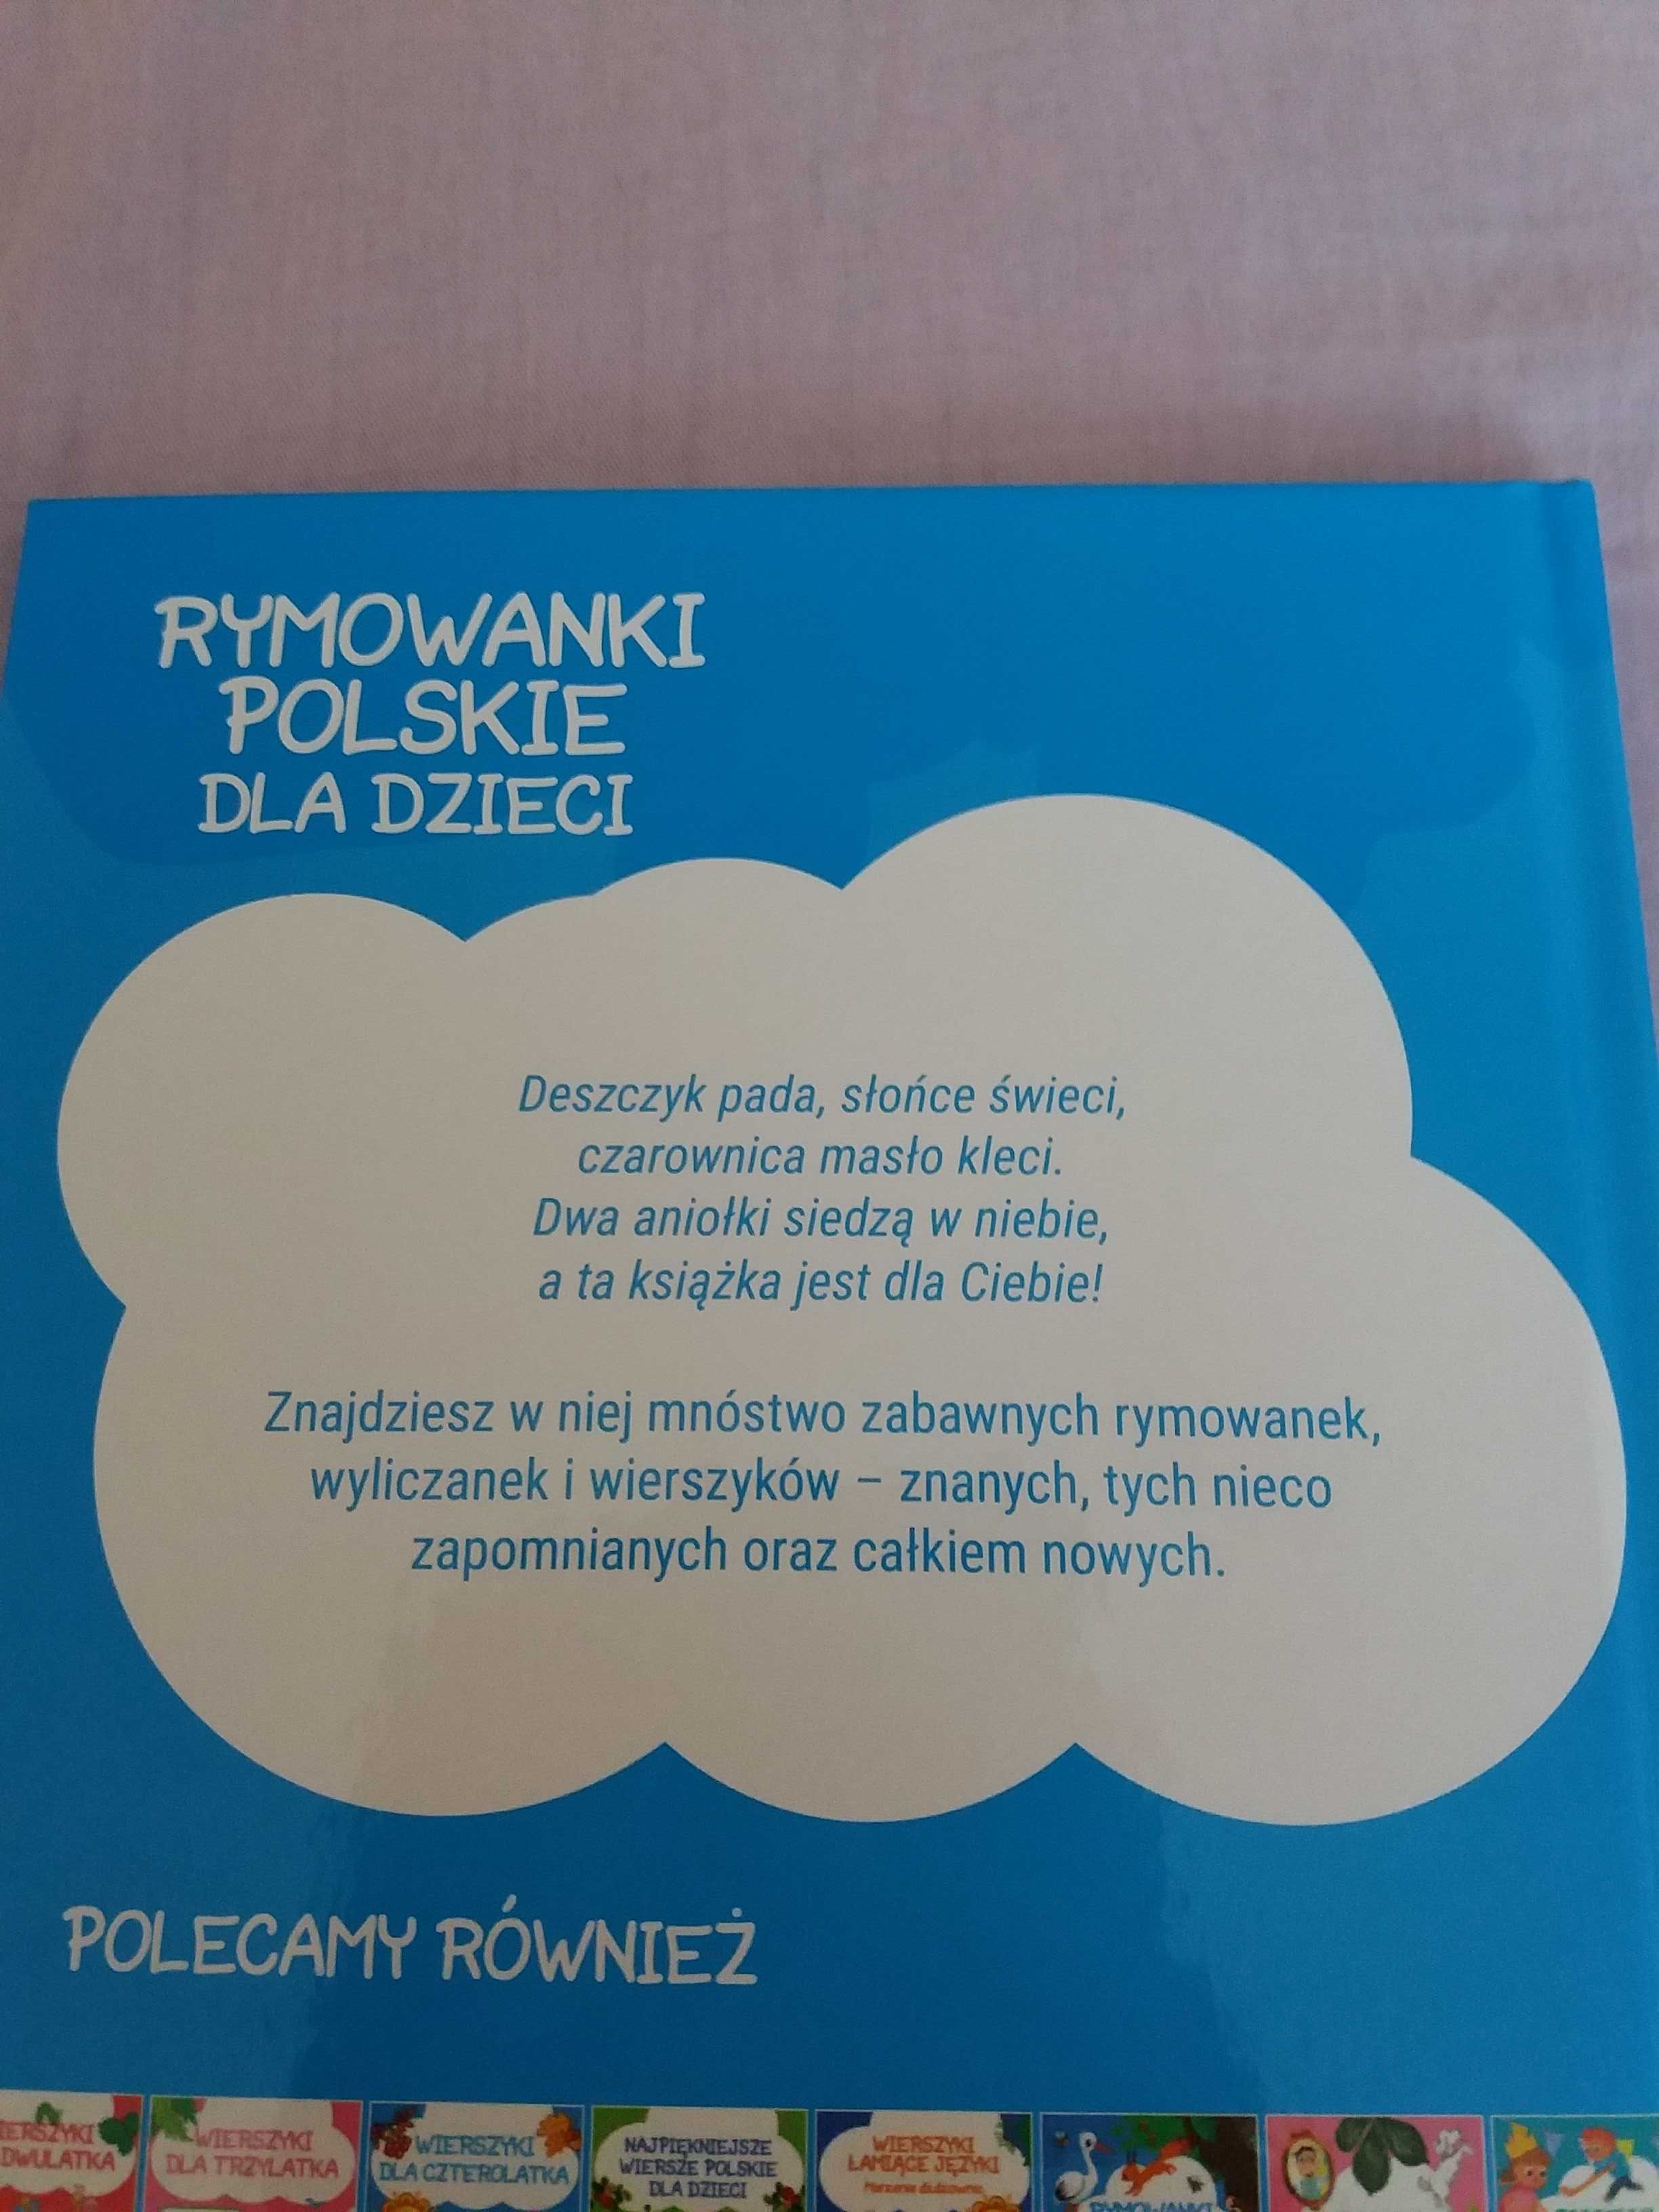 Rymowanki Polskie Dla Dzieci wyliczanki praca zbiorowa bdb